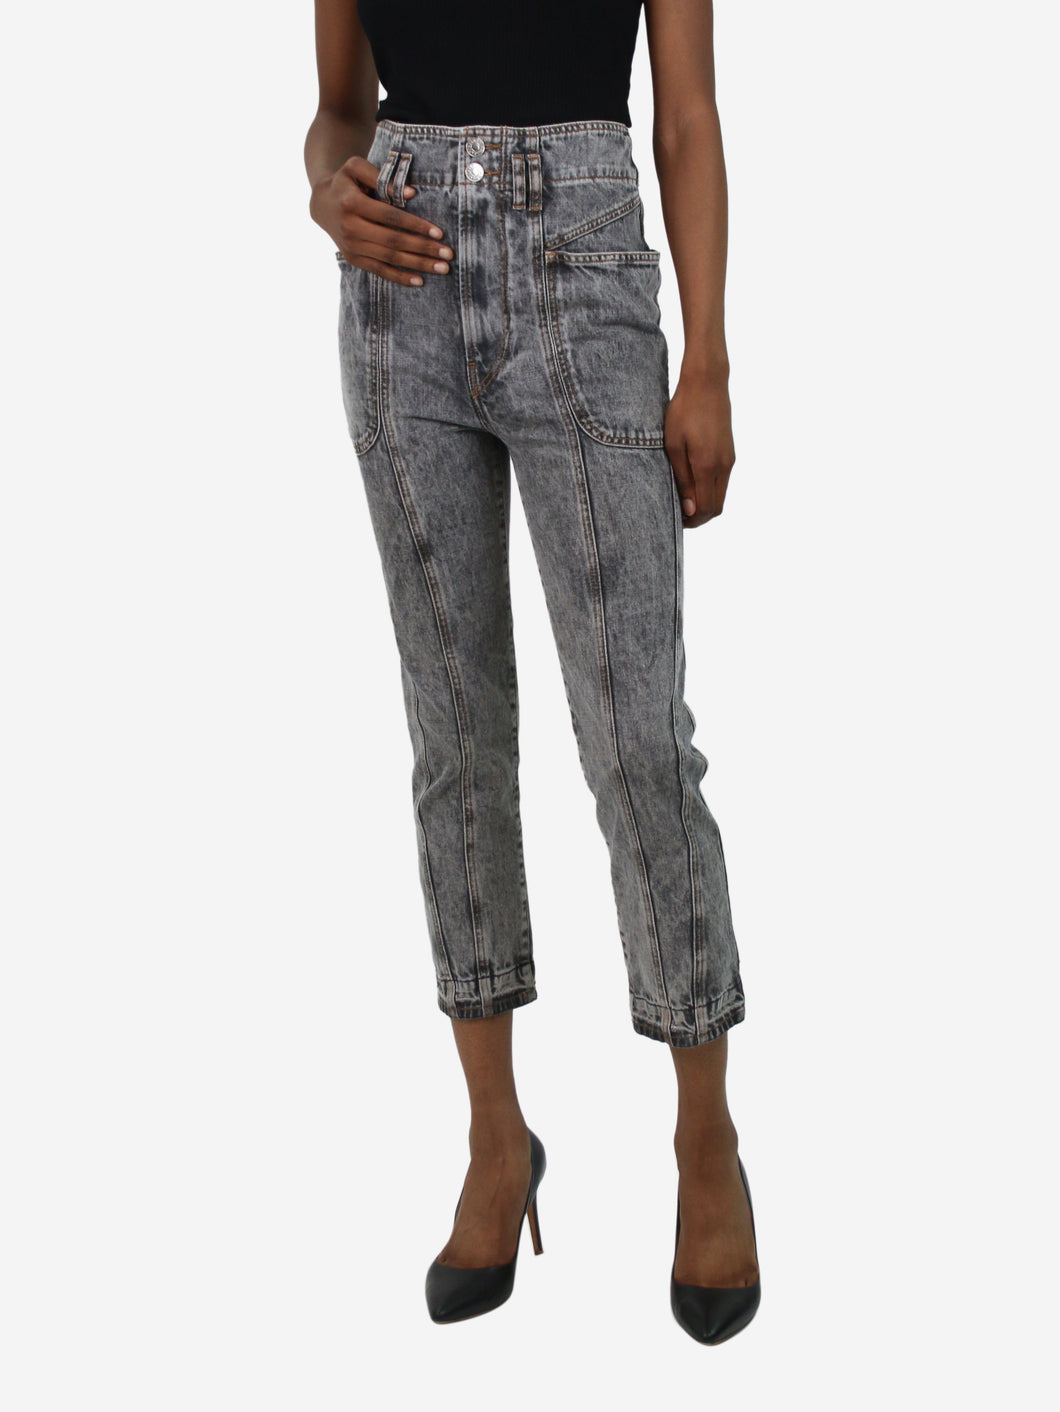 Grey acid wash utility jeans - size FR 34 Trousers Isabel Marant Etoile 